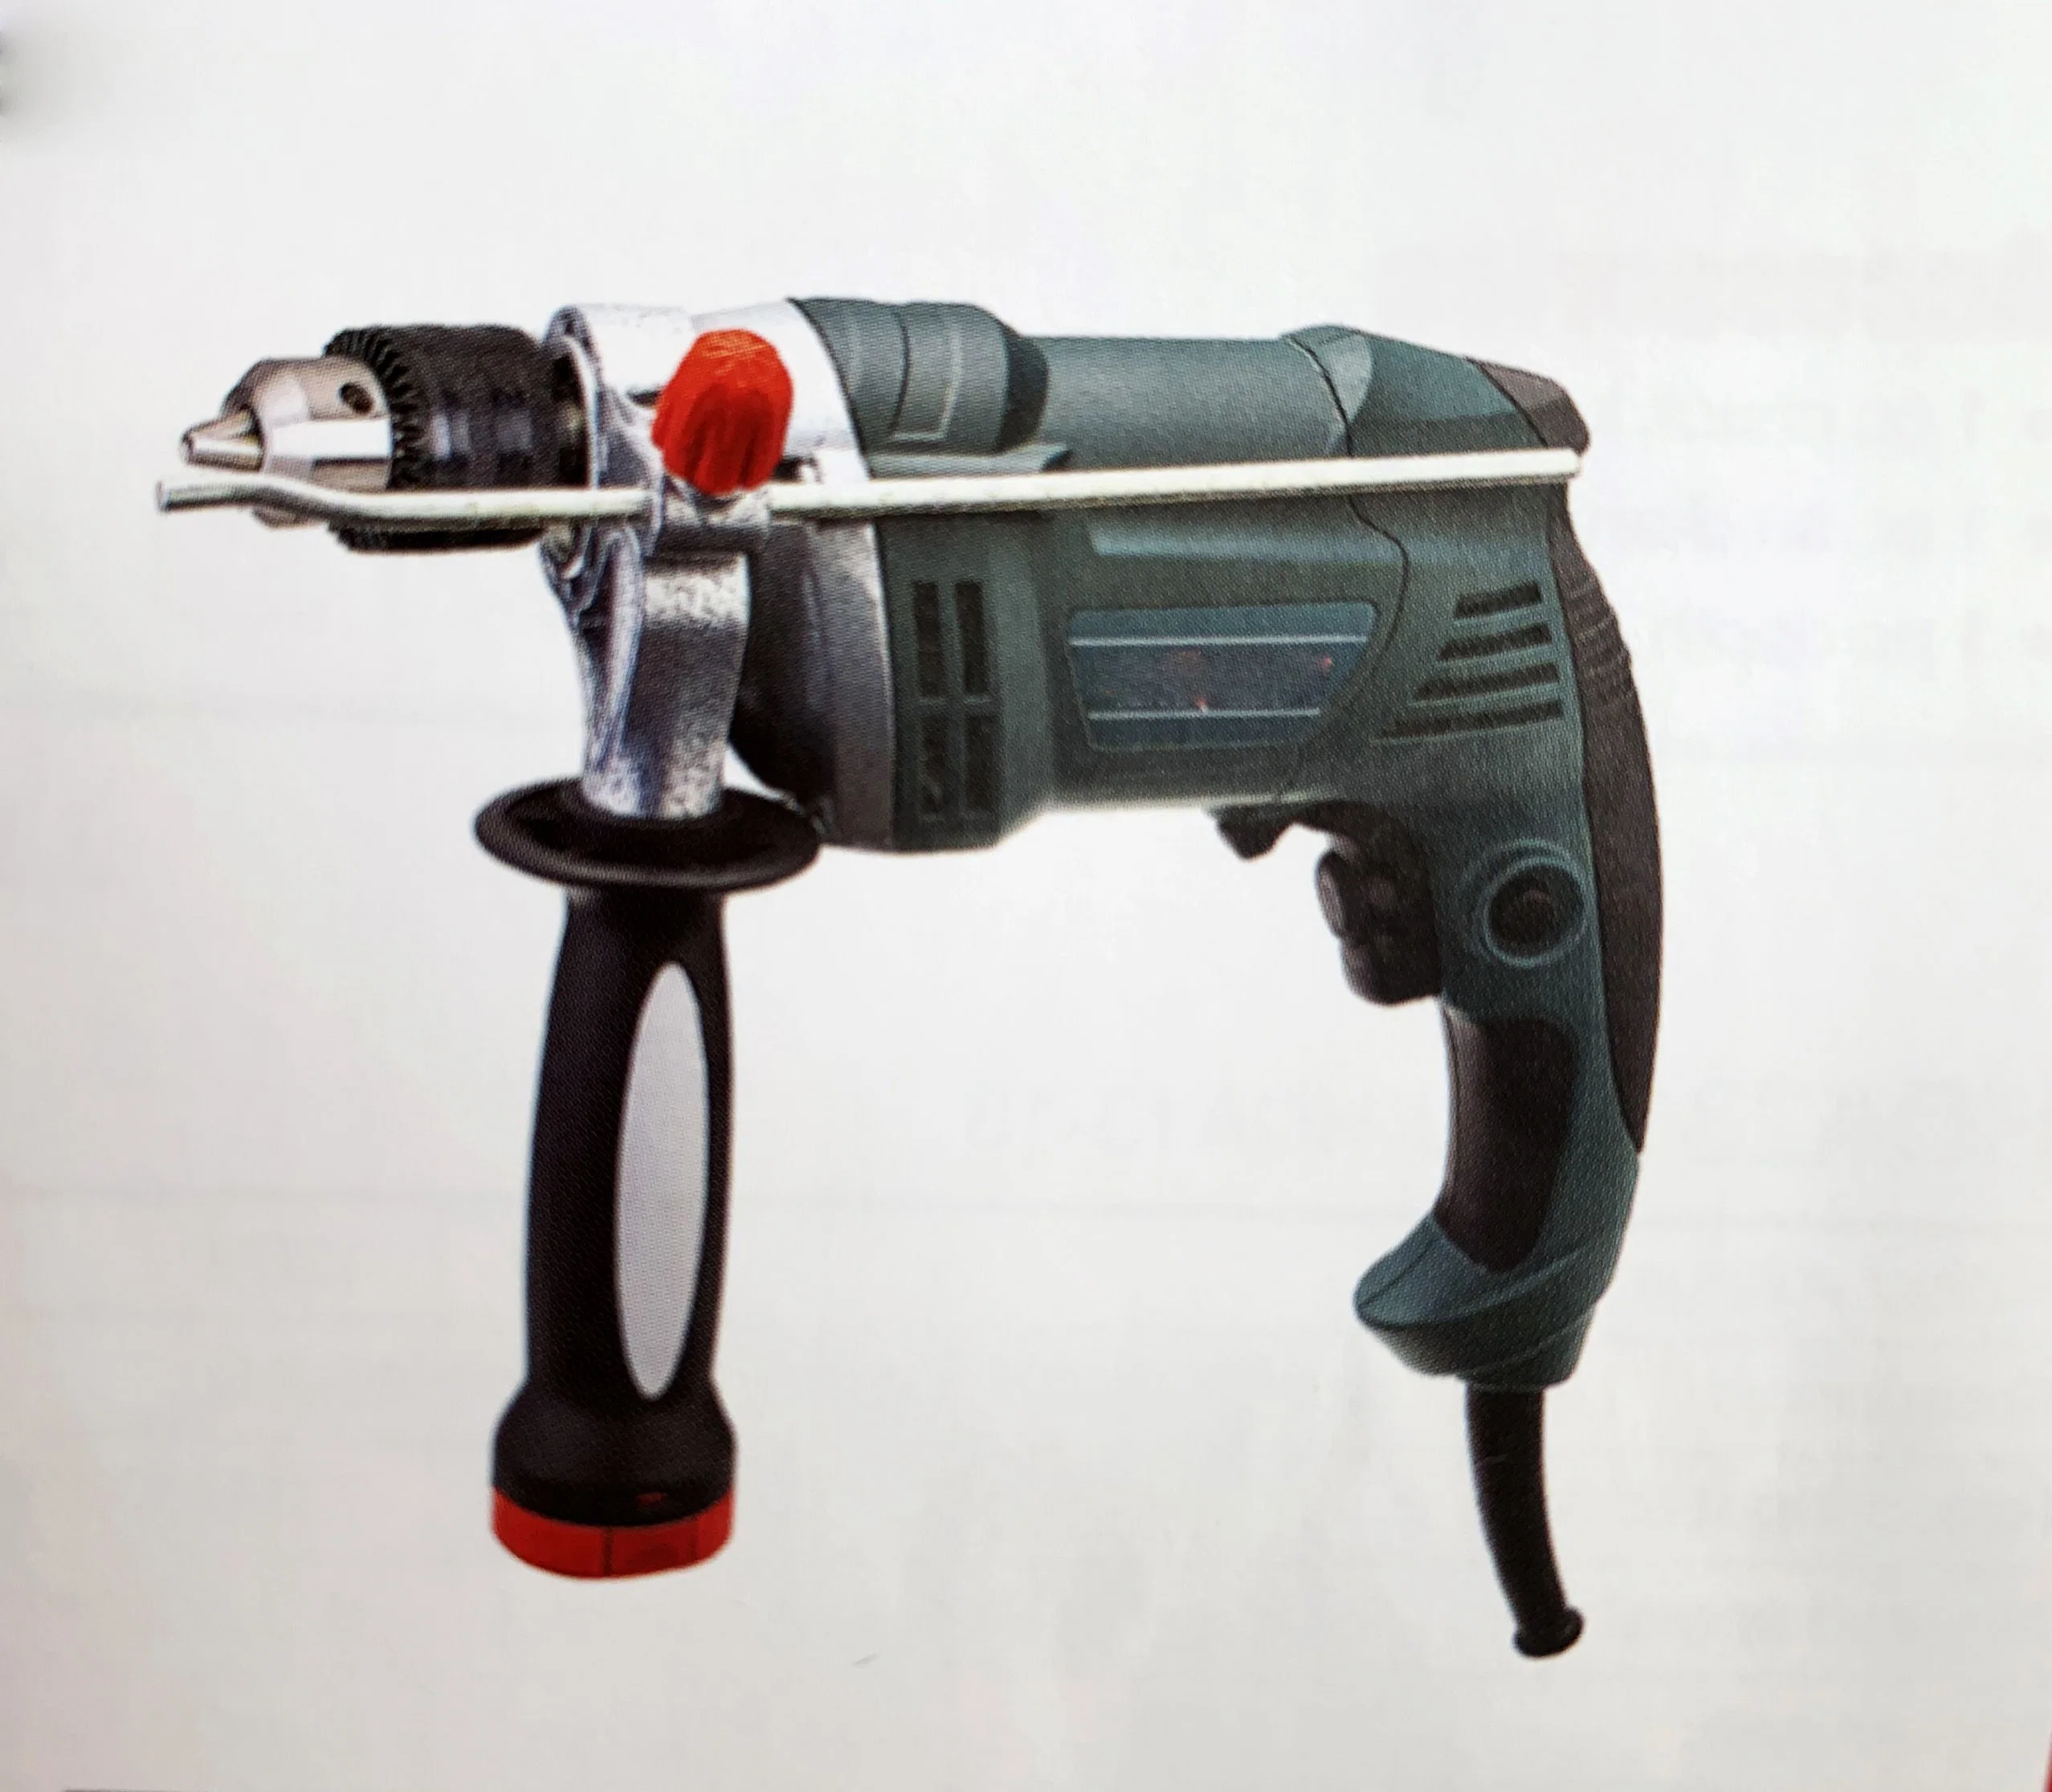 Handworking Elektrische Power Drill Tools / Hobby Elektrische Werkzeuge / Elektrische Bohrwerkzeuge für Heimwerker